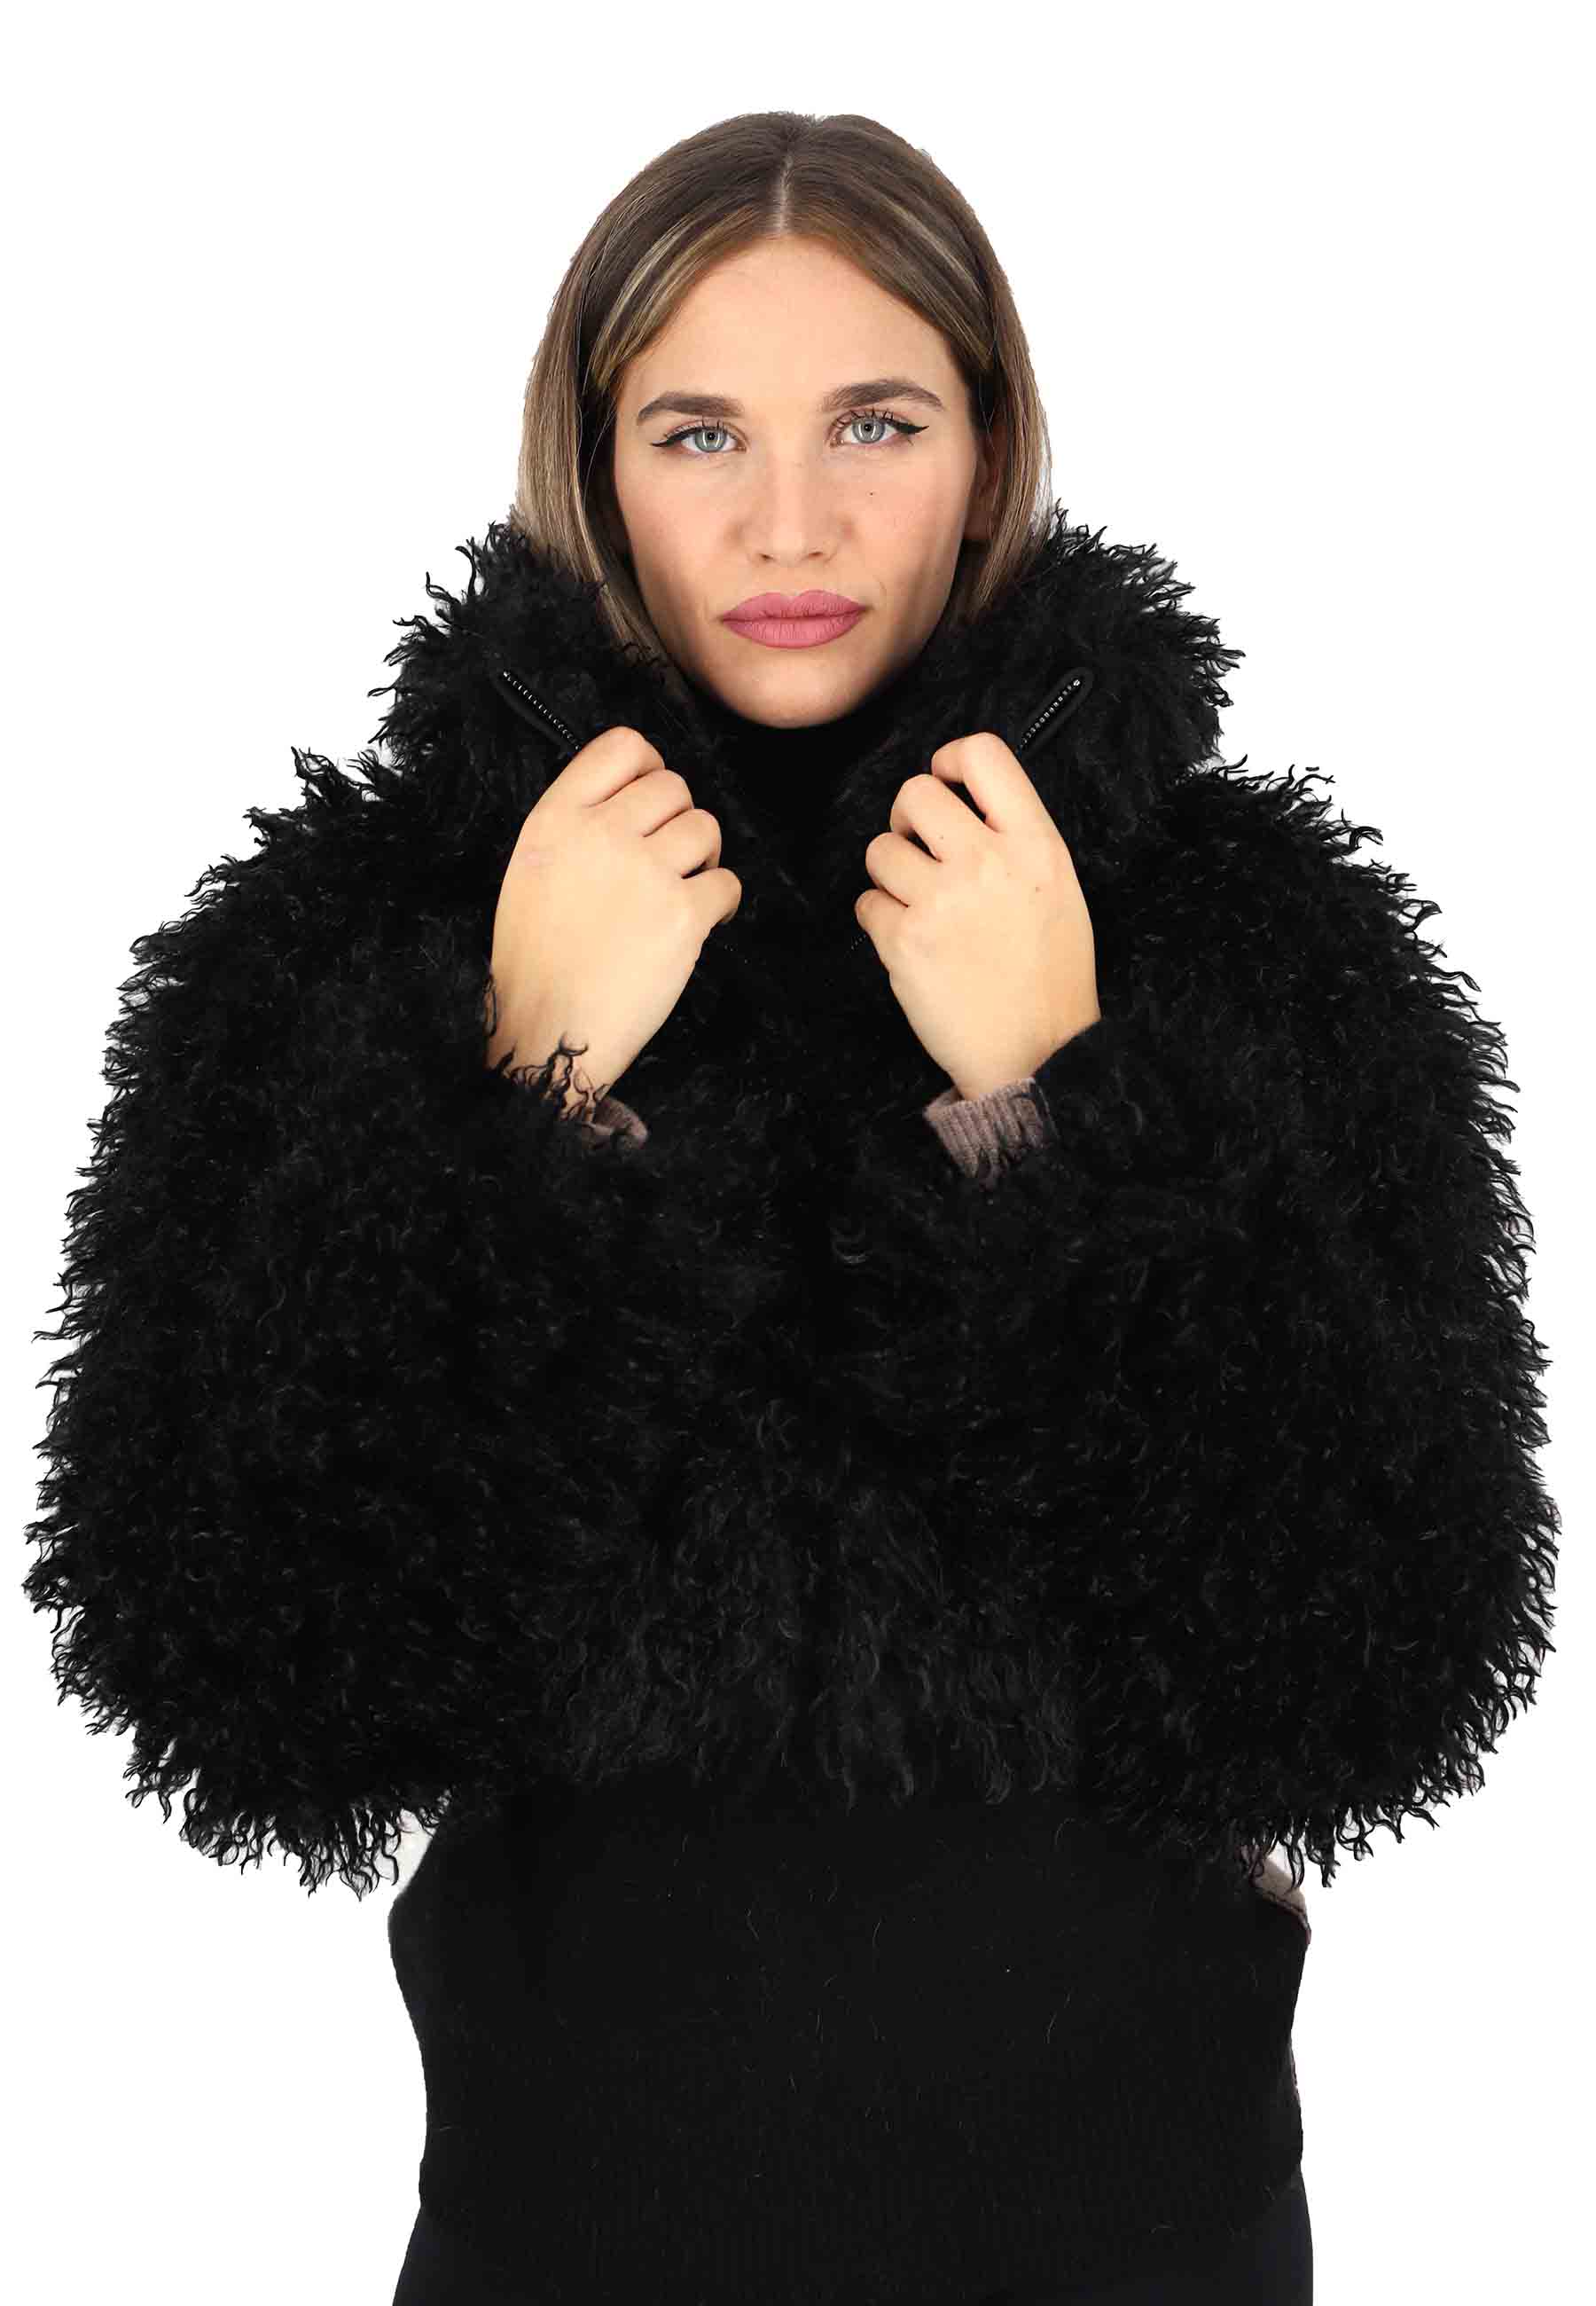 Short women's jackets in black eco fur